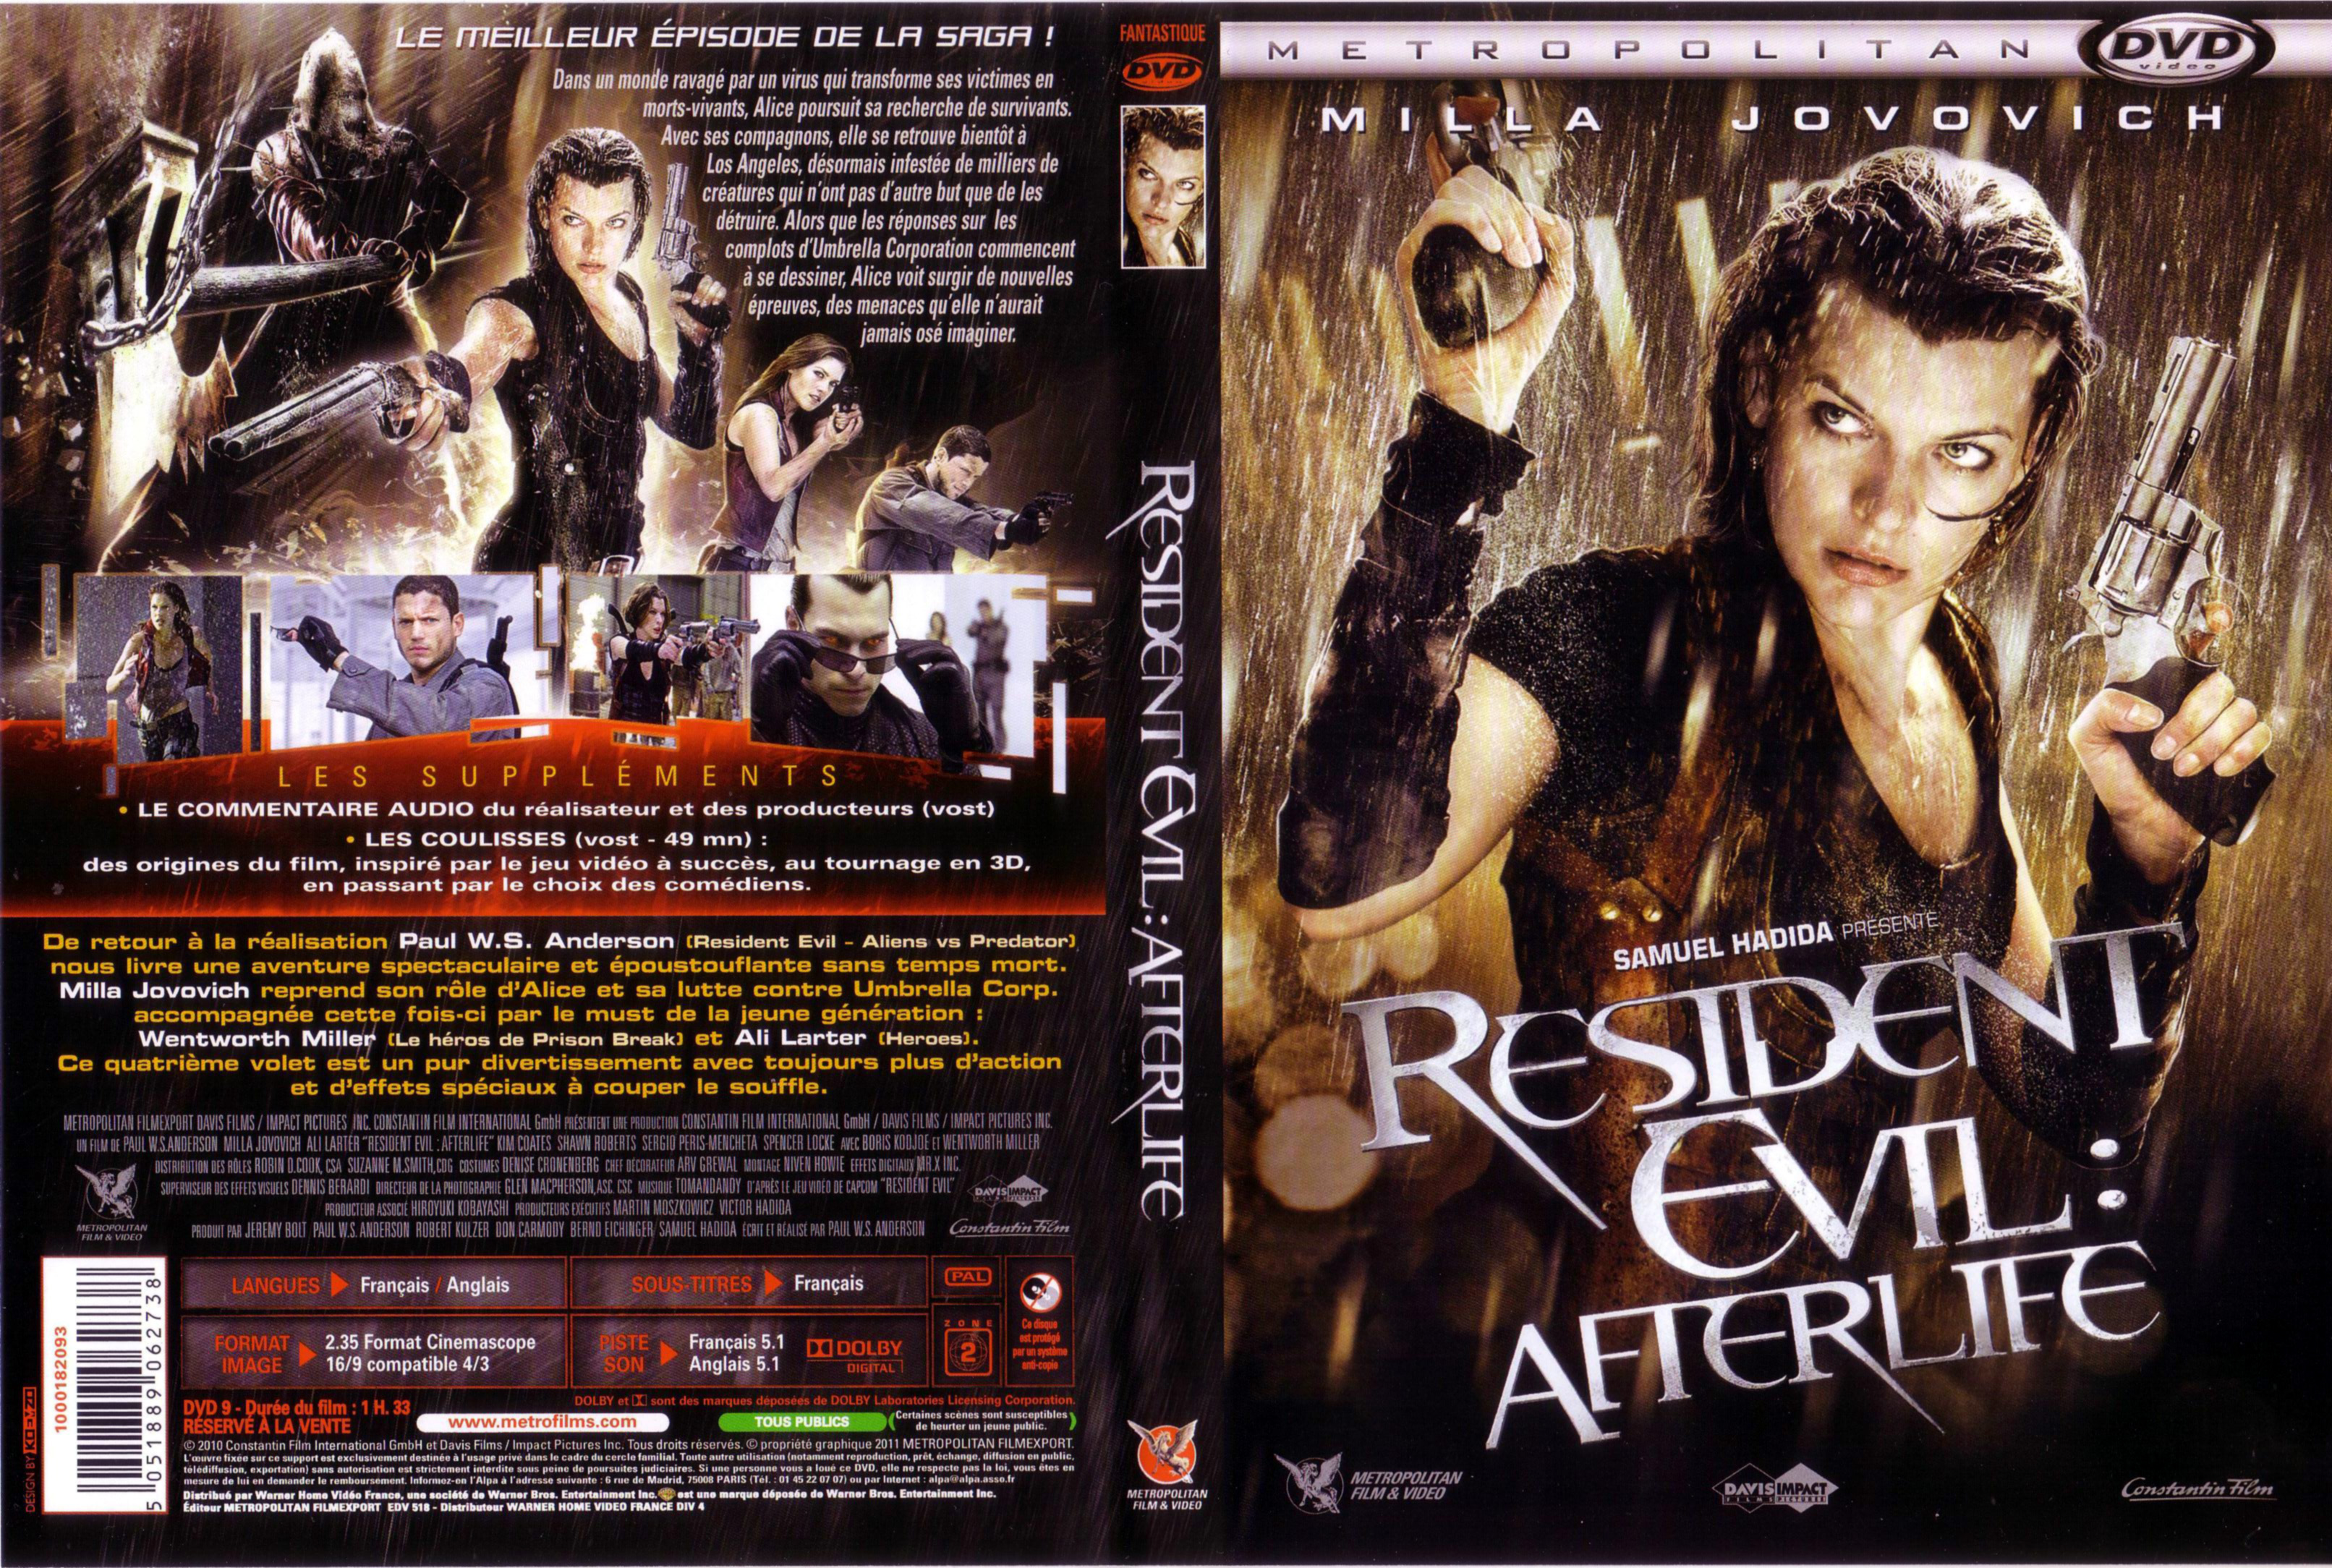 Jaquette DVD Resident Evil Afterlife 3D v2